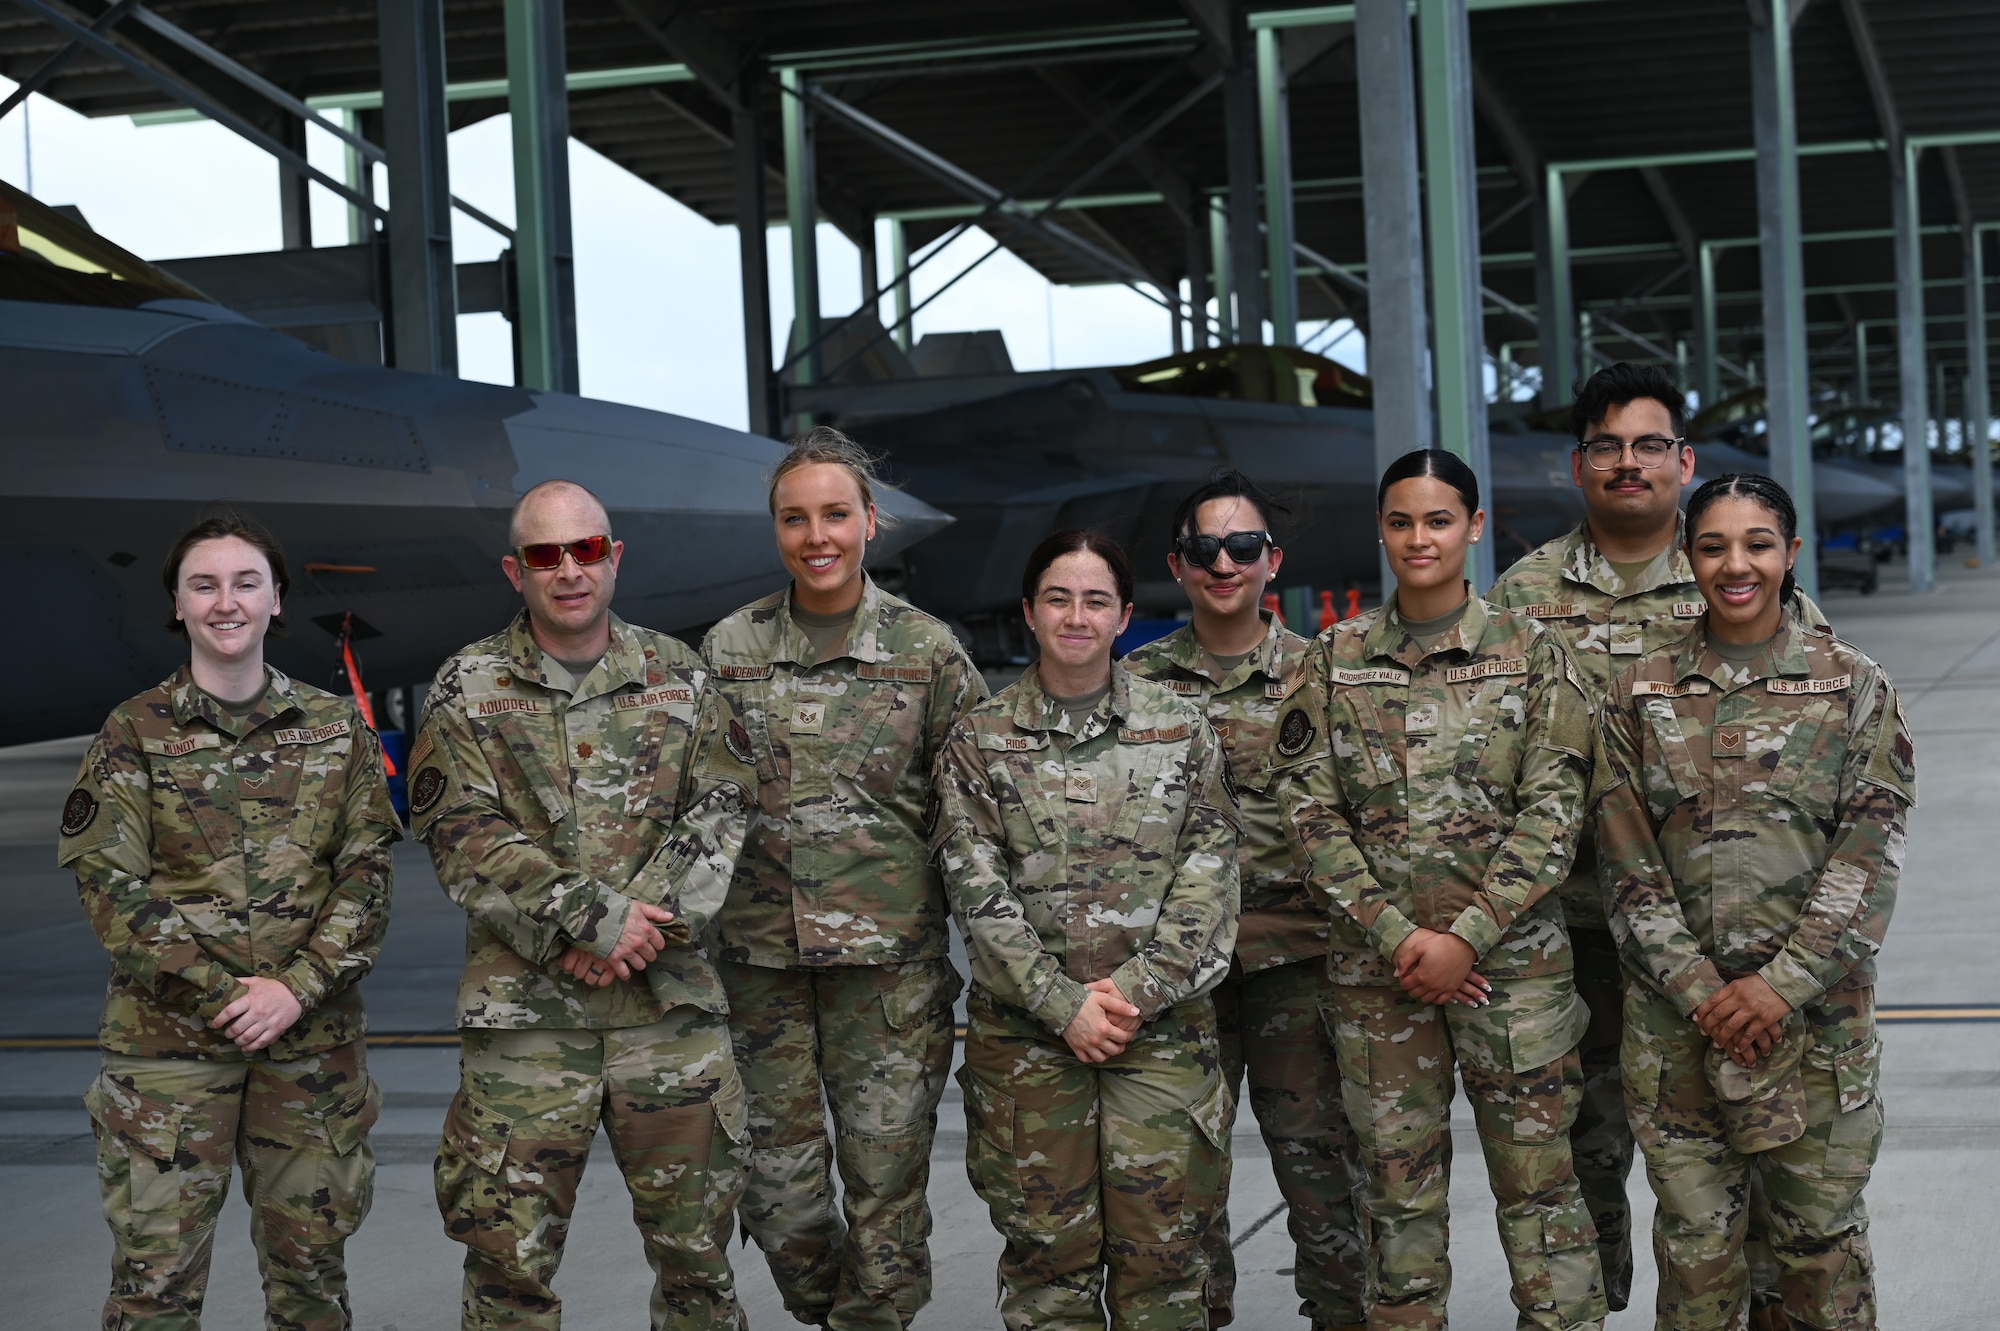 Eight men and women in OCP uniform pose in front of F-22 Raptors.